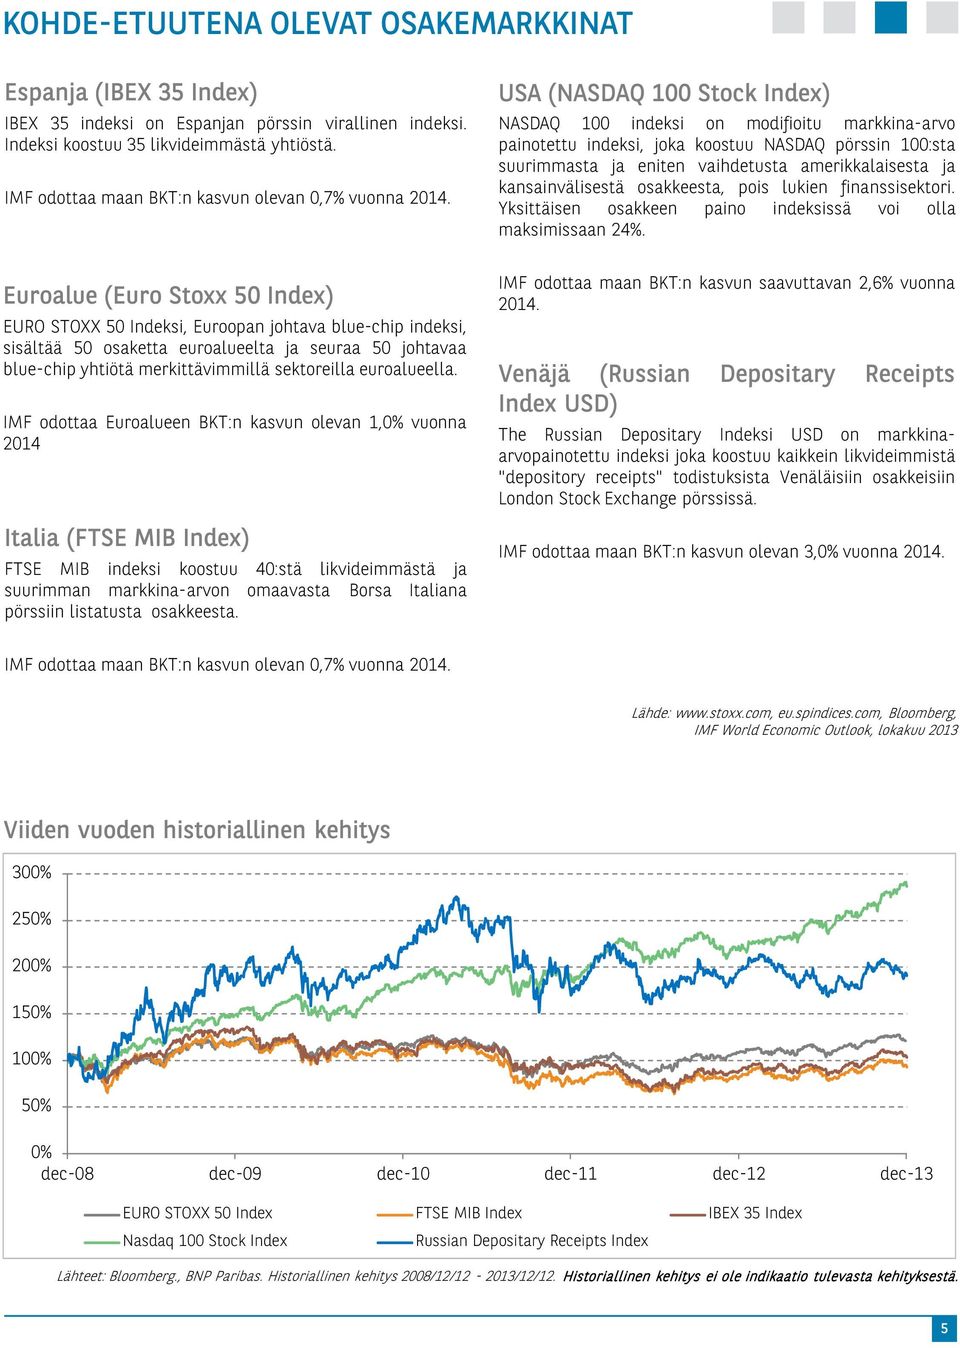 Euroalue (Euro Stoxx 50 Index) EURO STOXX 50 Indeksi, Euroopan johtava blue-chip indeksi, sisältää 50 osaketta euroalueelta ja seuraa 50 johtavaa blue-chip yhtiötä merkittävimmillä sektoreilla